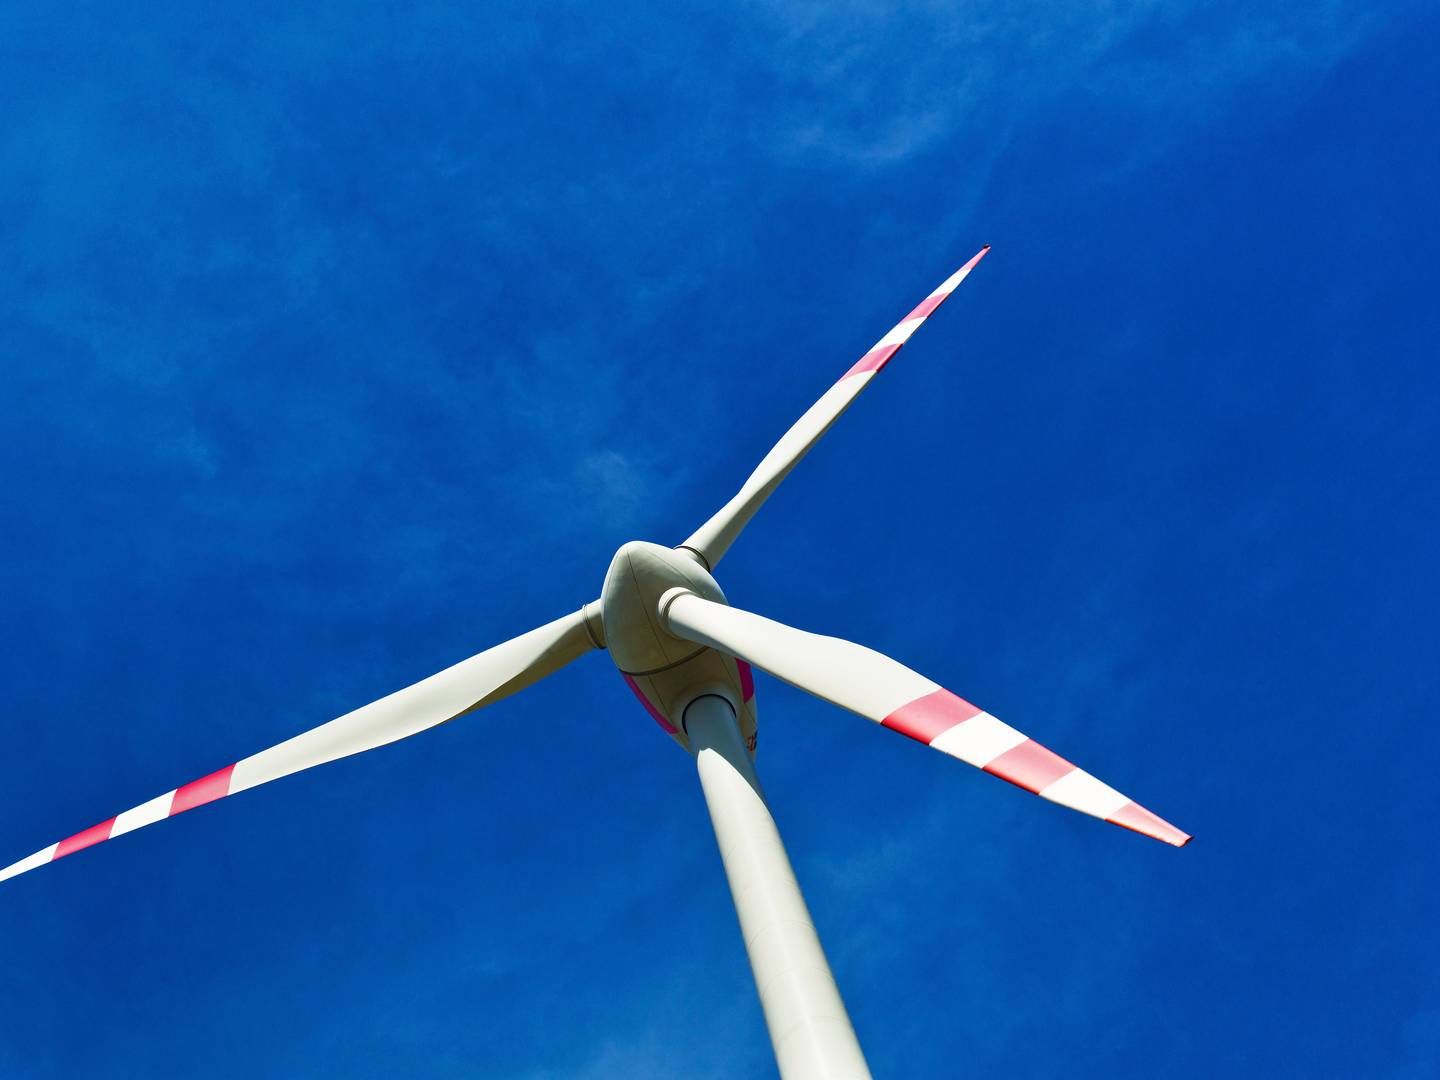 MER AV DETTE? Bedrifter vil ha vindkraft for å bøte på høye strømutgifter, skriver Fedrelandsvennen. Illustrasjonsfoto. | Foto: Colourbox